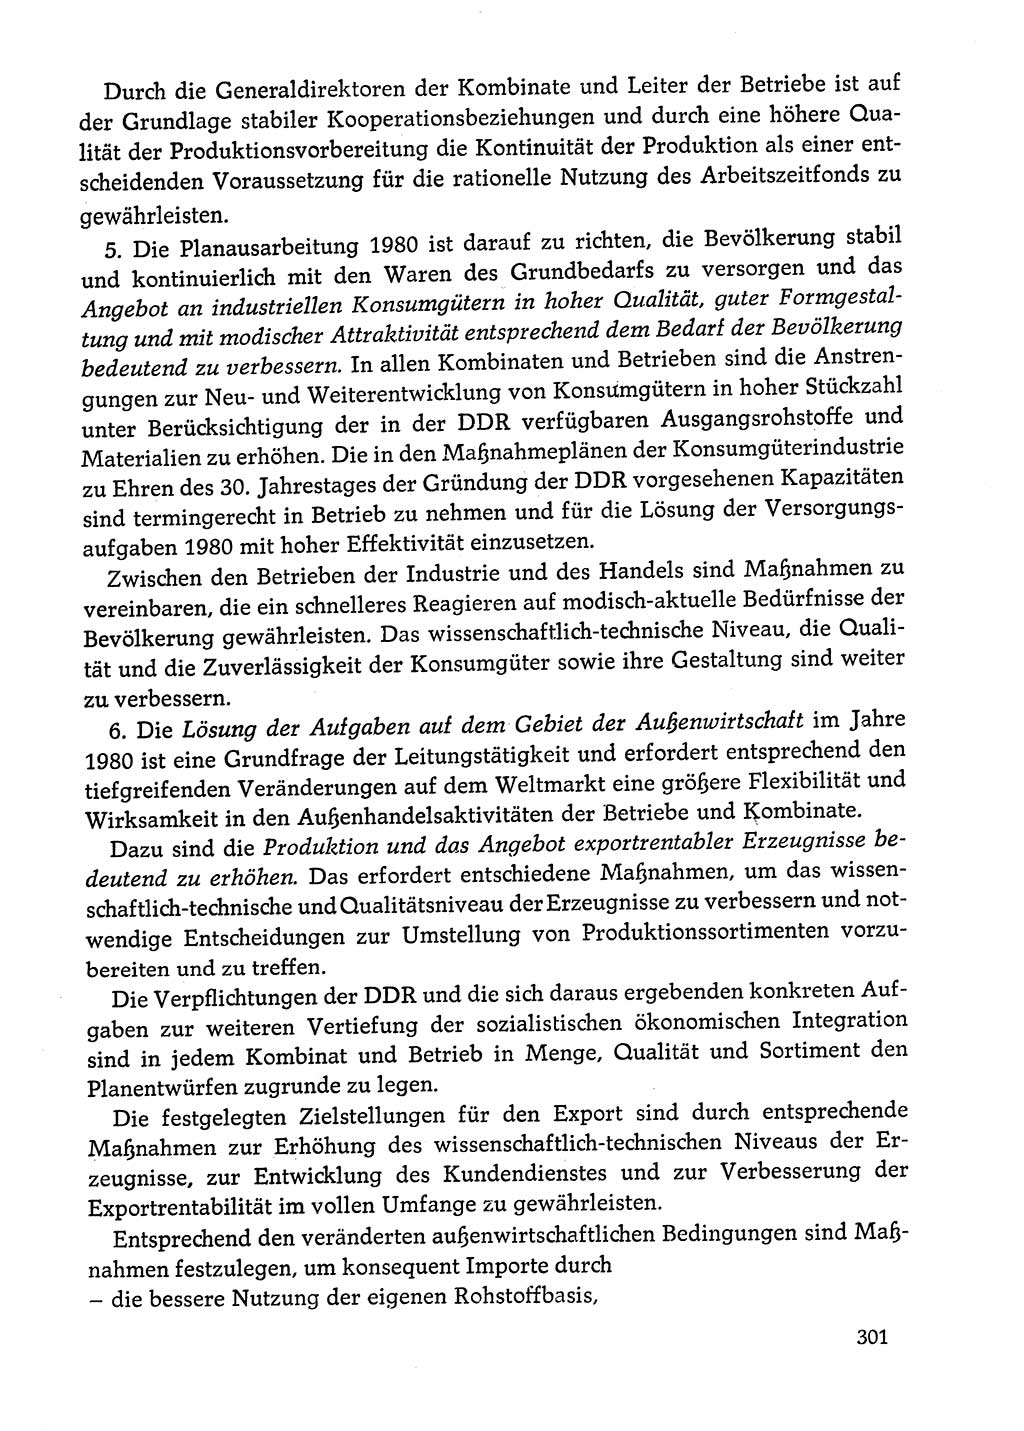 Dokumente der Sozialistischen Einheitspartei Deutschlands (SED) [Deutsche Demokratische Republik (DDR)] 1978-1979, Seite 301 (Dok. SED DDR 1978-1979, S. 301)